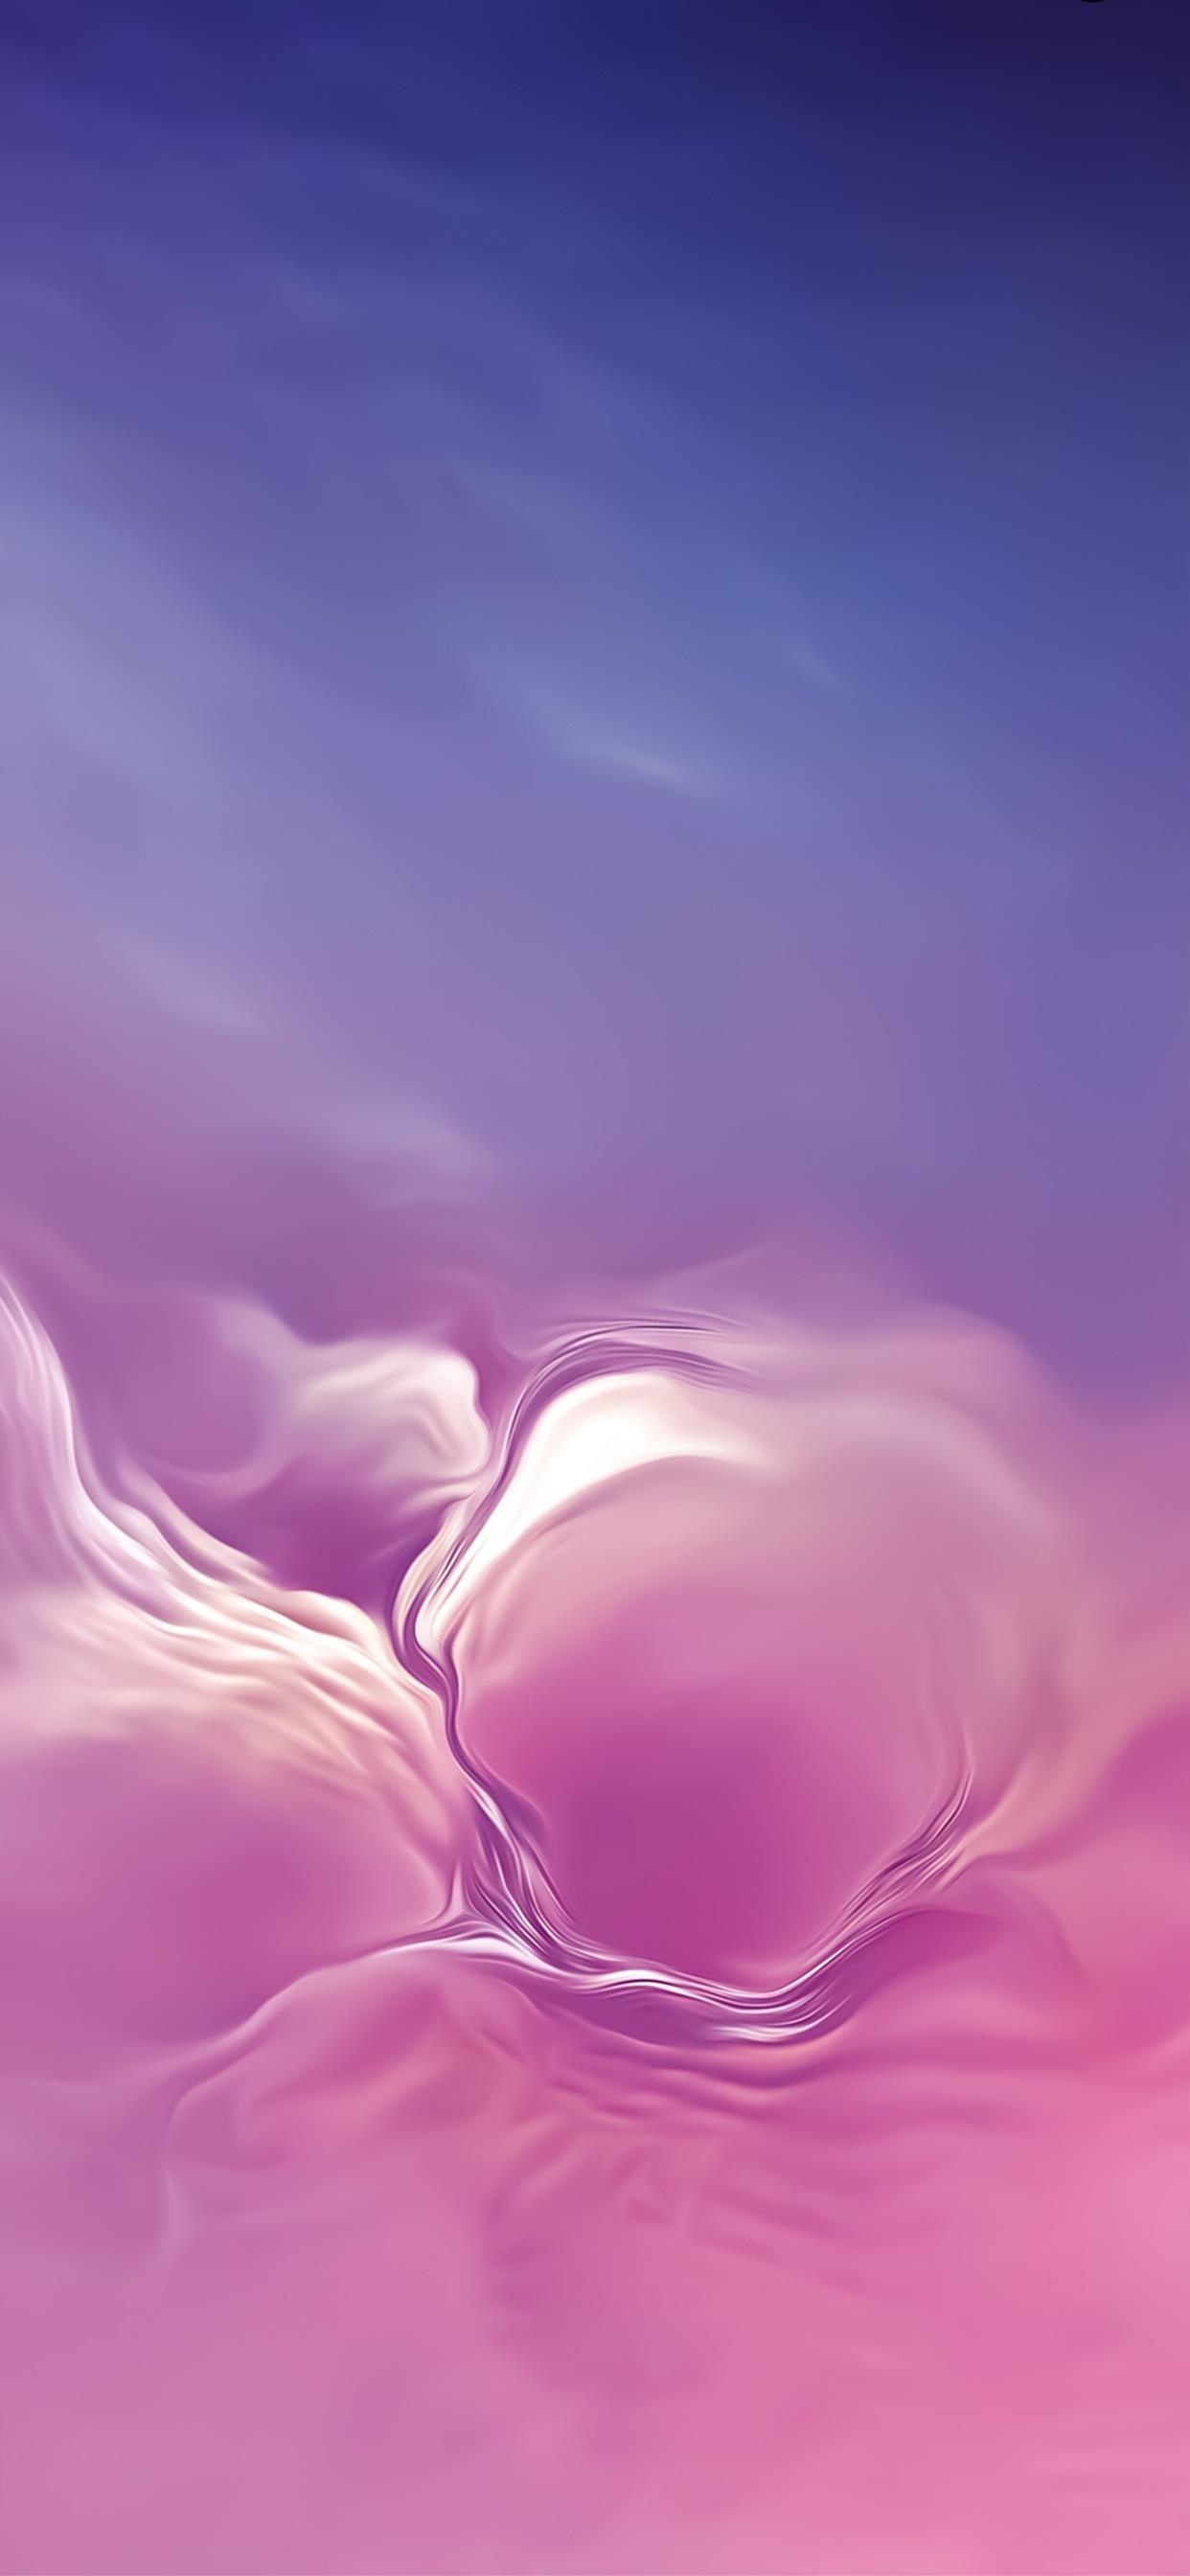 samsung galaxy wallpaper,rosa,himmel,lila,violett,blütenblatt